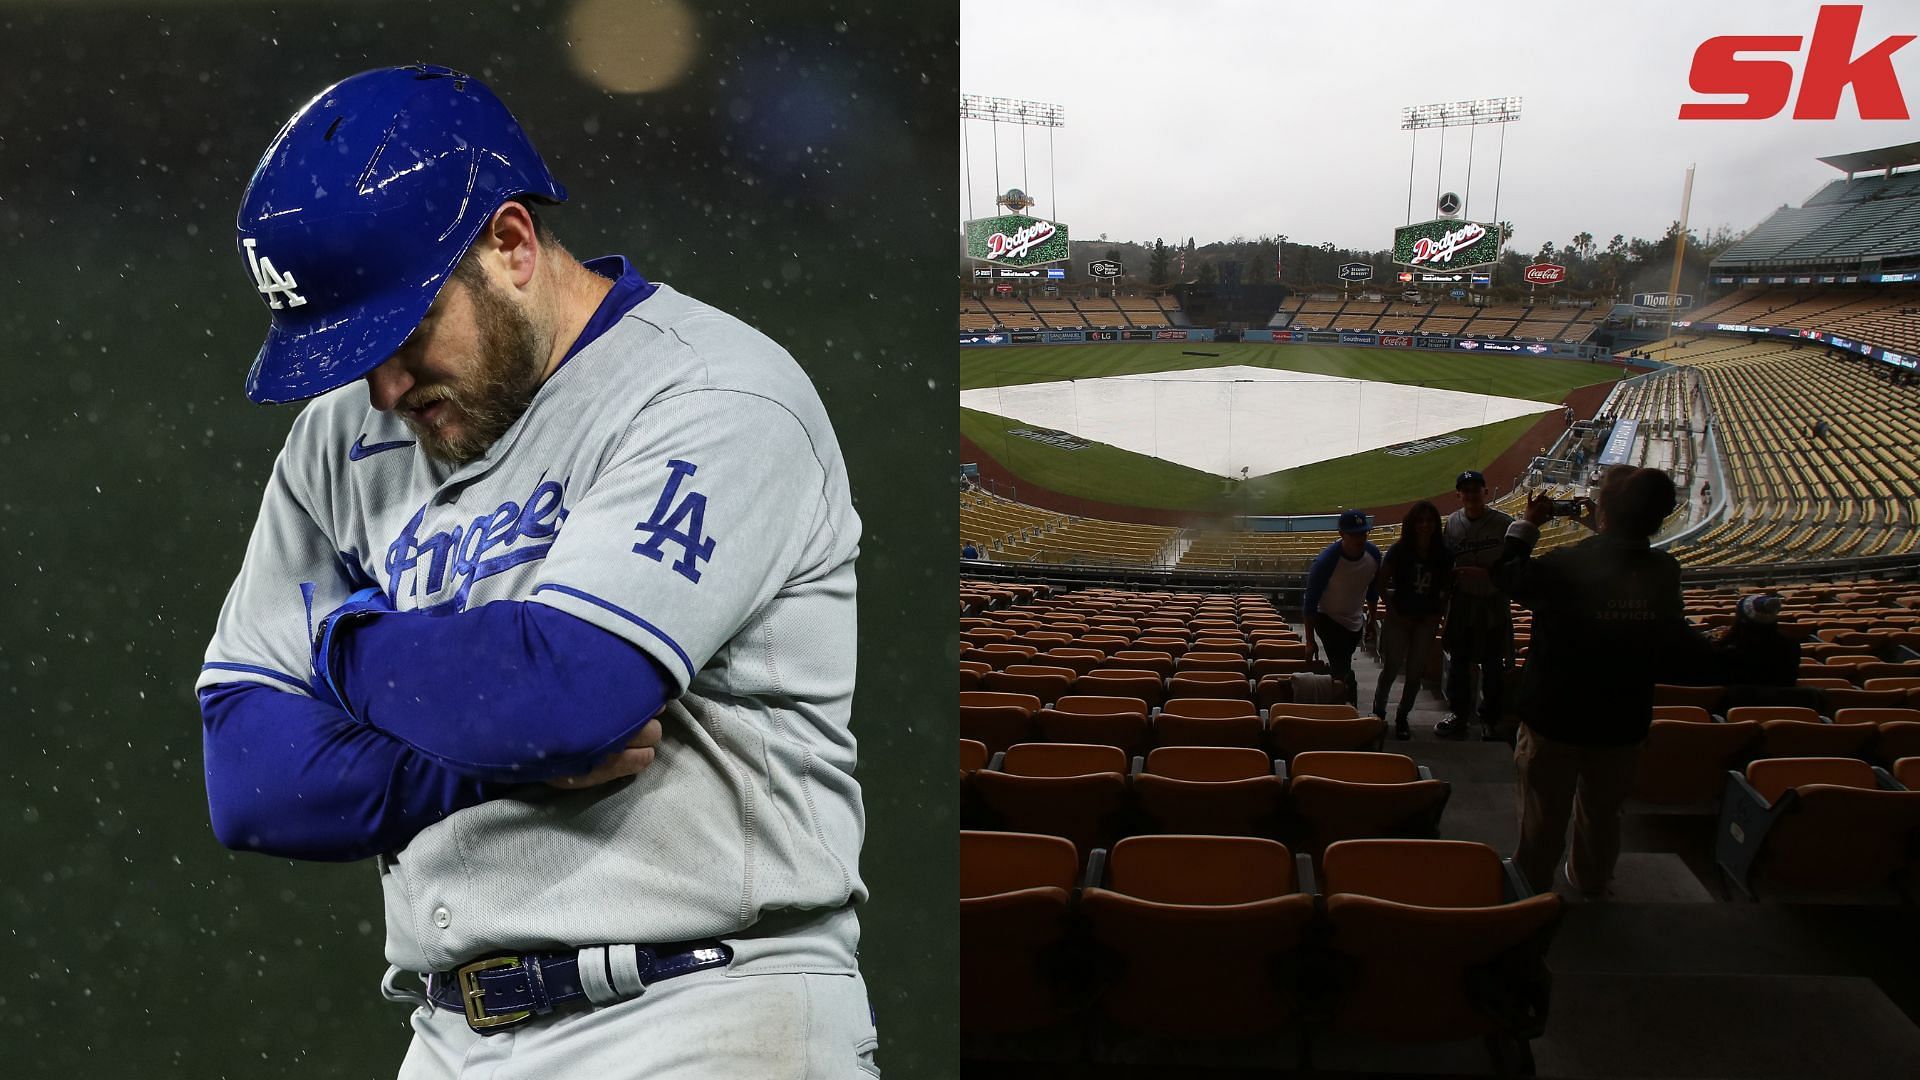 Nats beat Dodgers, 7-6 after 4-hour rain delay